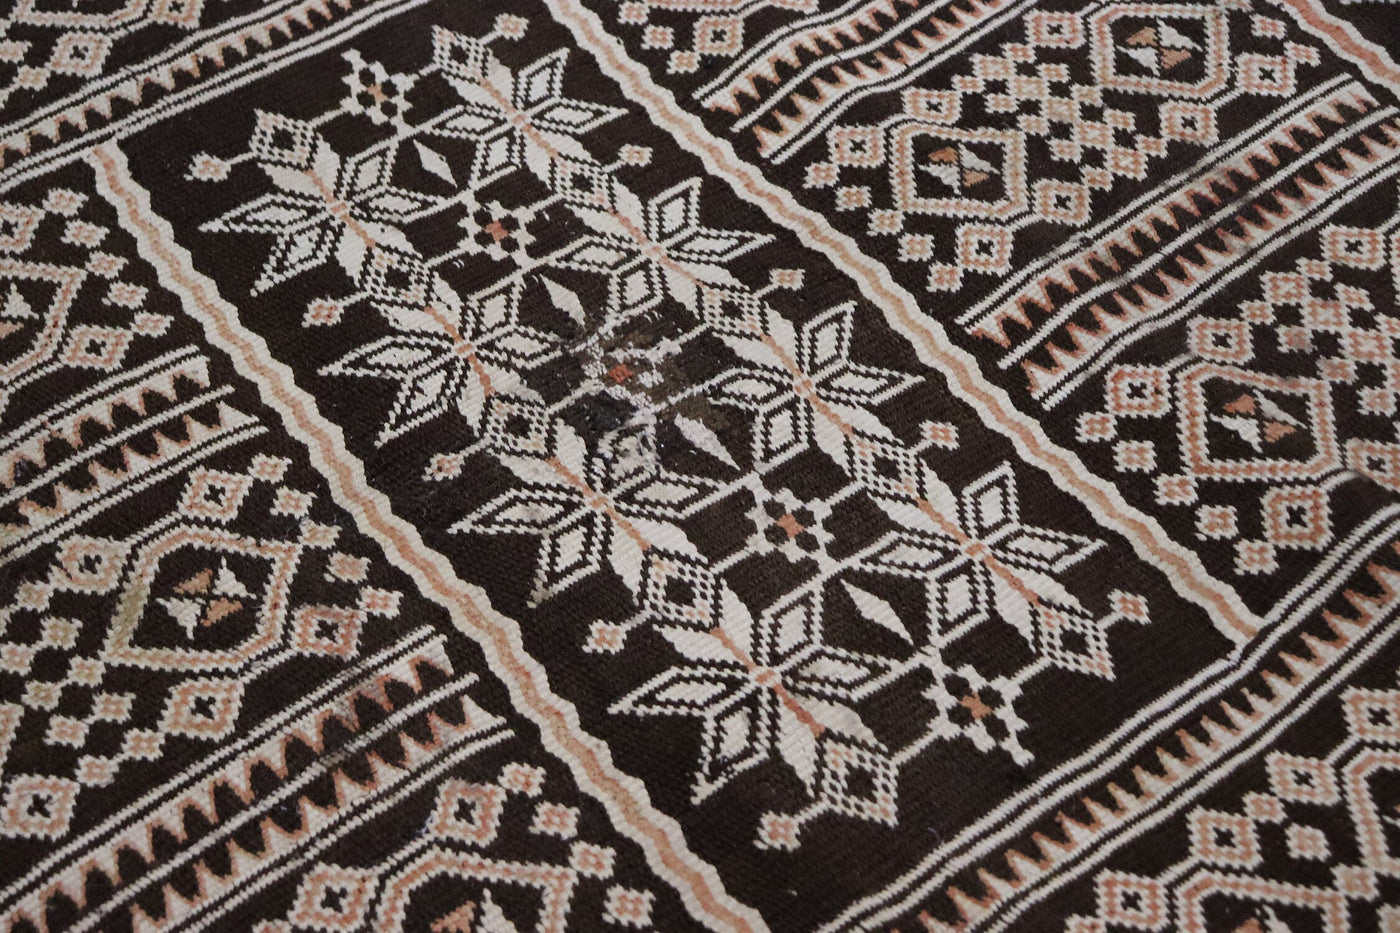 200x110 cm Antik orient handgewebte Teppich Nomaden kelim afghan Beloch kilim ziegenwolle Nr-22-Z Teppiche Orientsbazar   